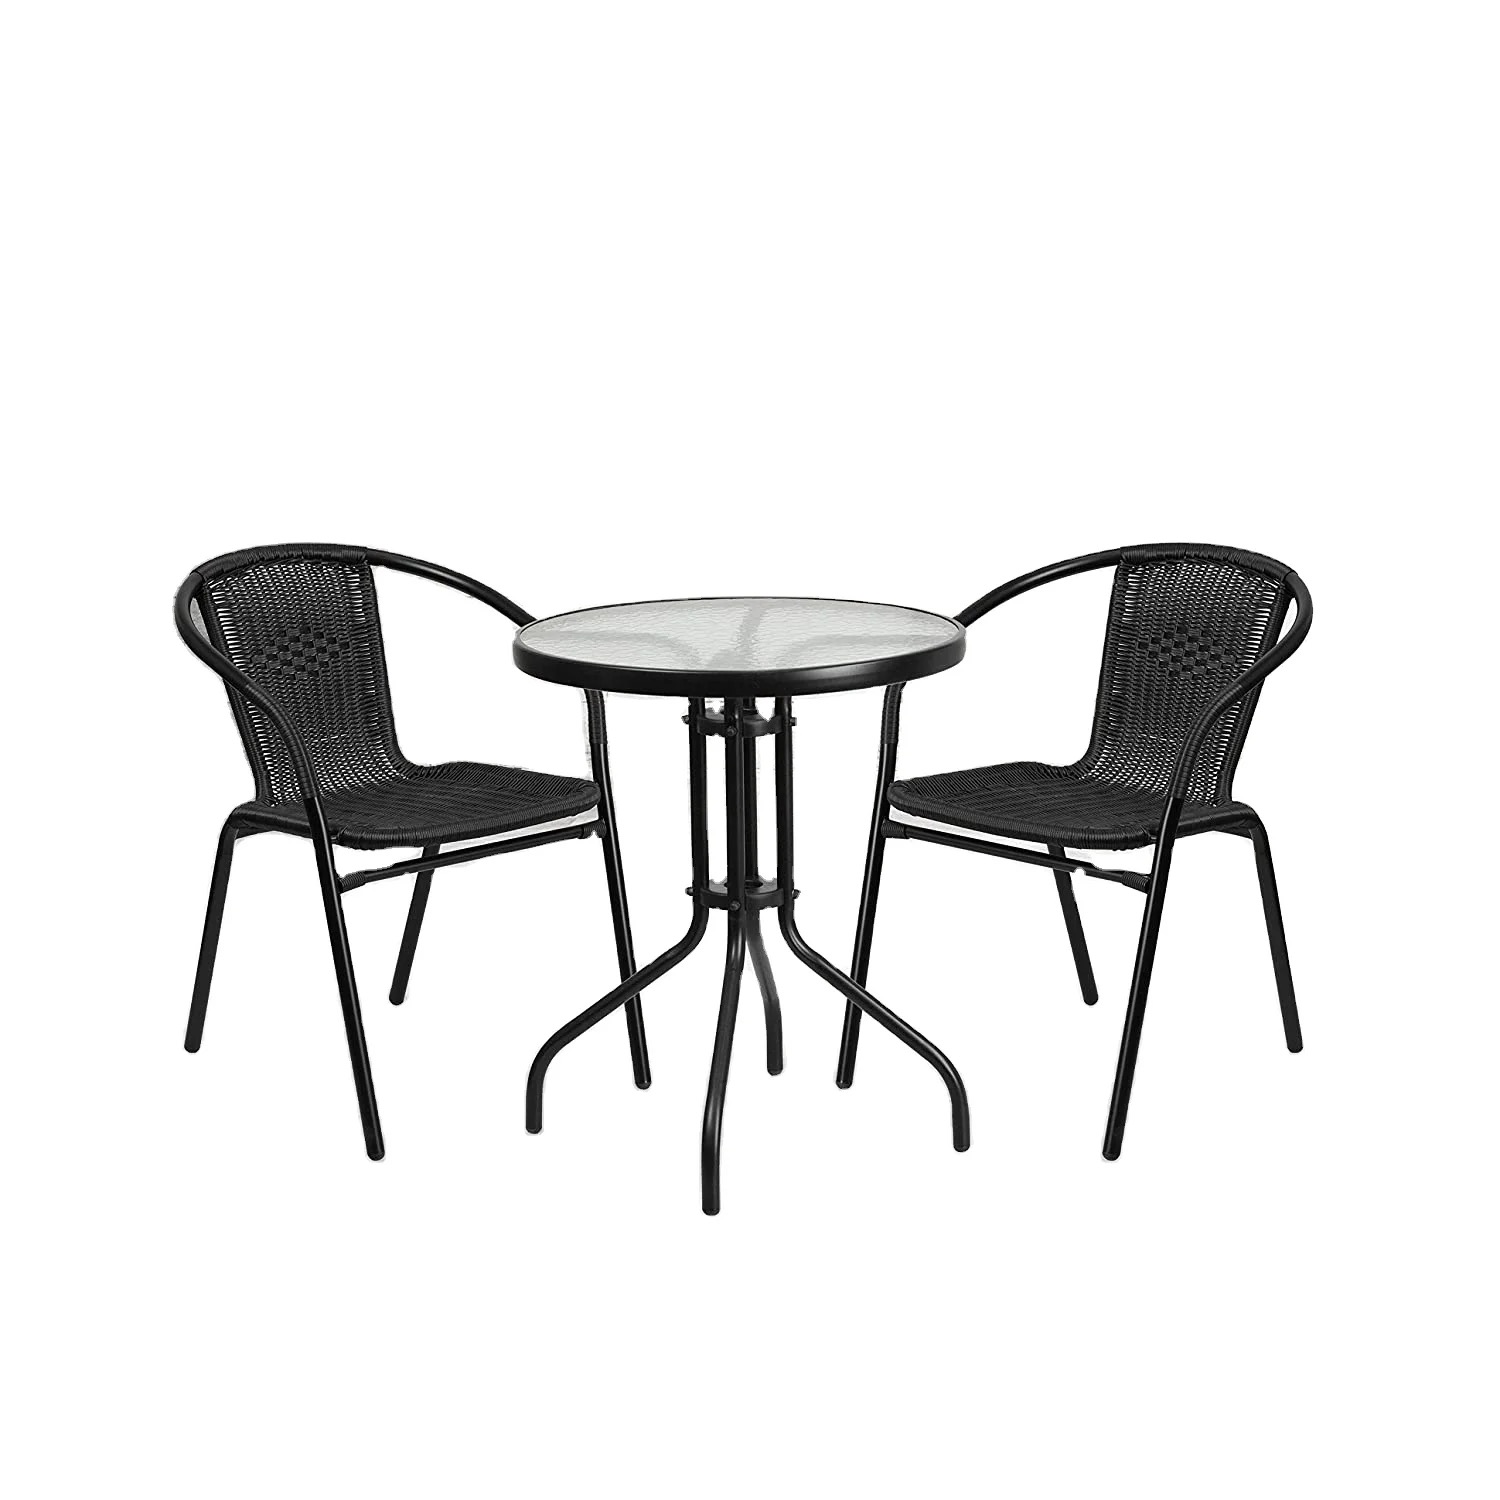 Градински комплект – маса с 2 стола цвят черен